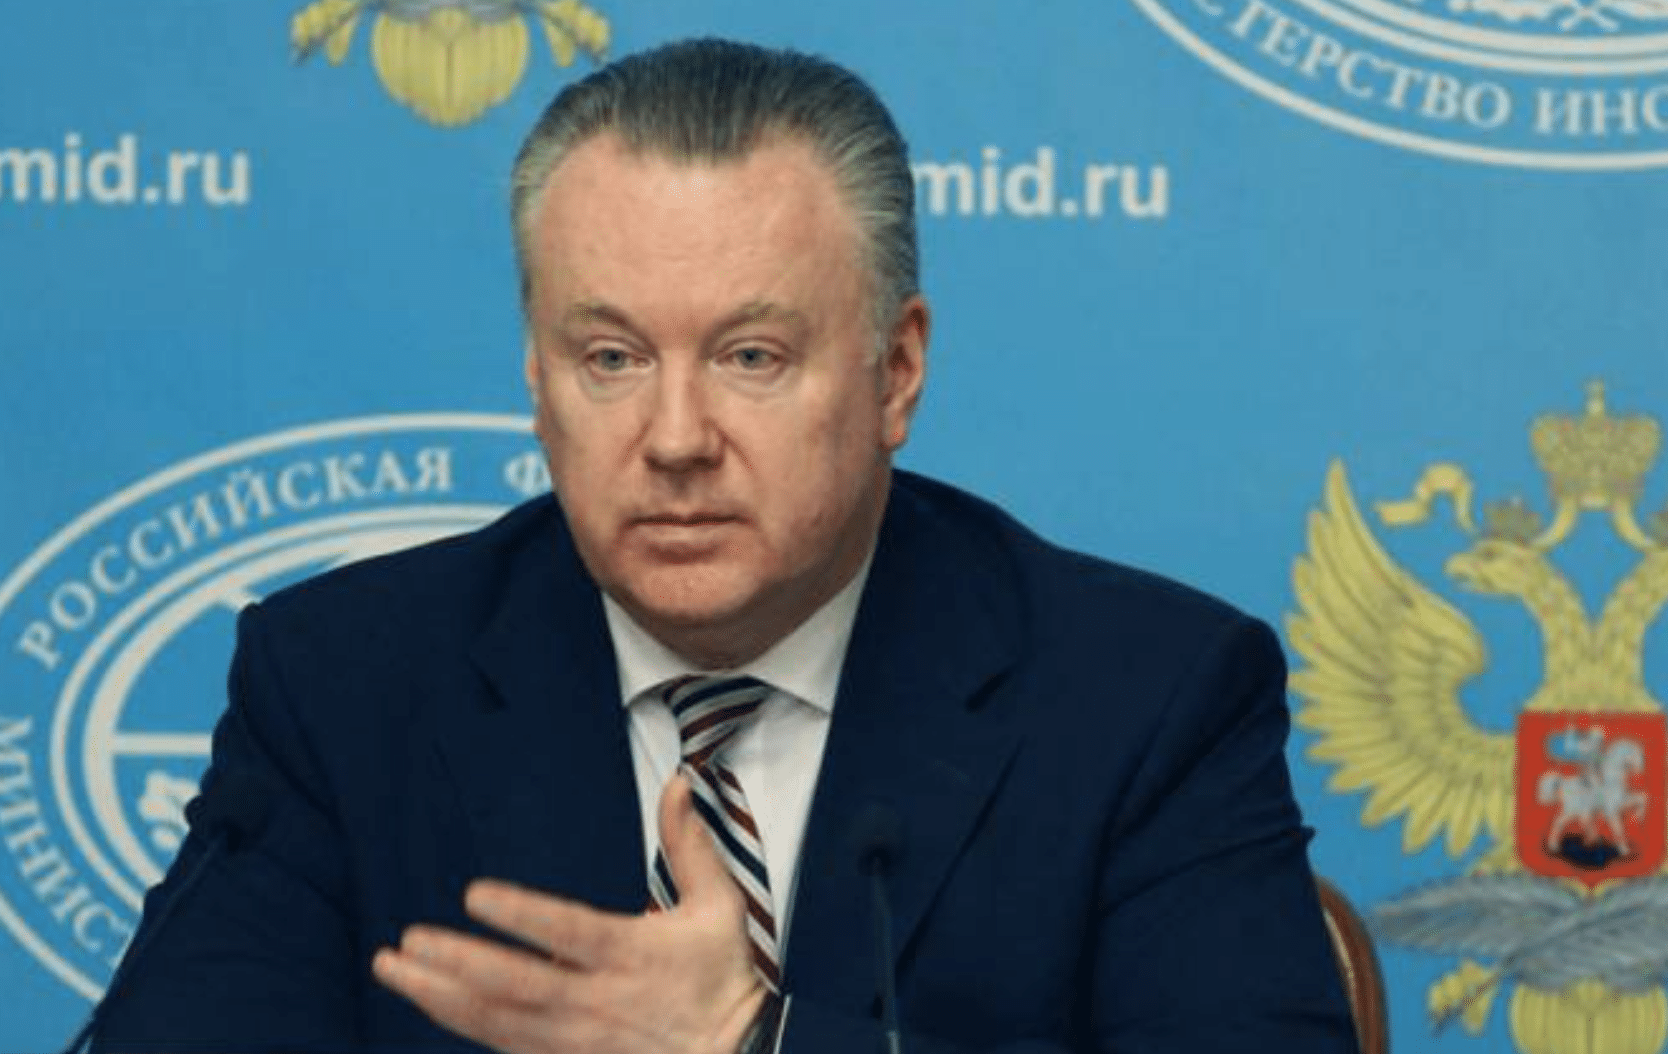 ՌԴ-ն մտահոգված է, որ ԵԱՀԿ Մինսկի խմբի համանախագահները չեն կարողանում այցելել Ղարաբաղ. Լուկաշևիչ